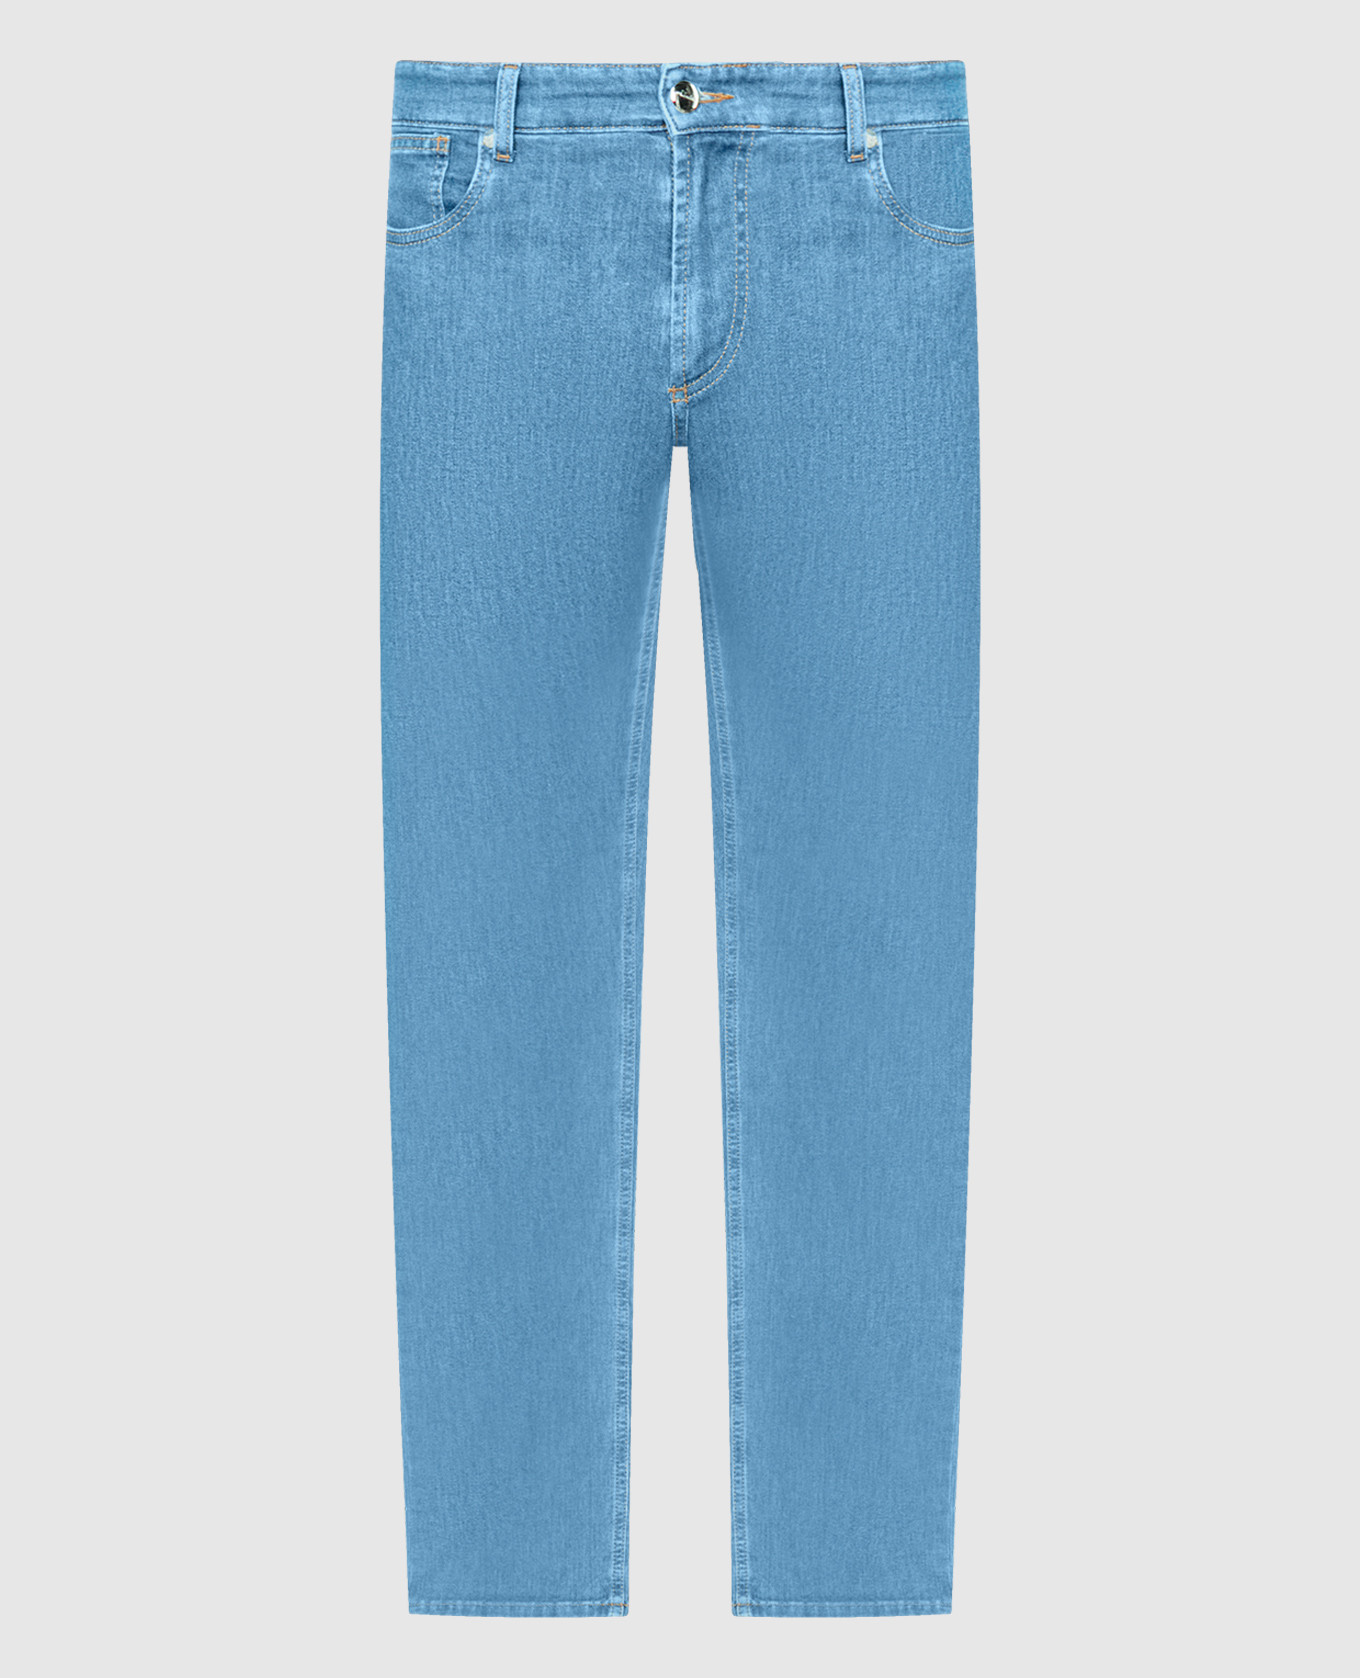 Голубые джинсы с вышивкой и патчем логотипа